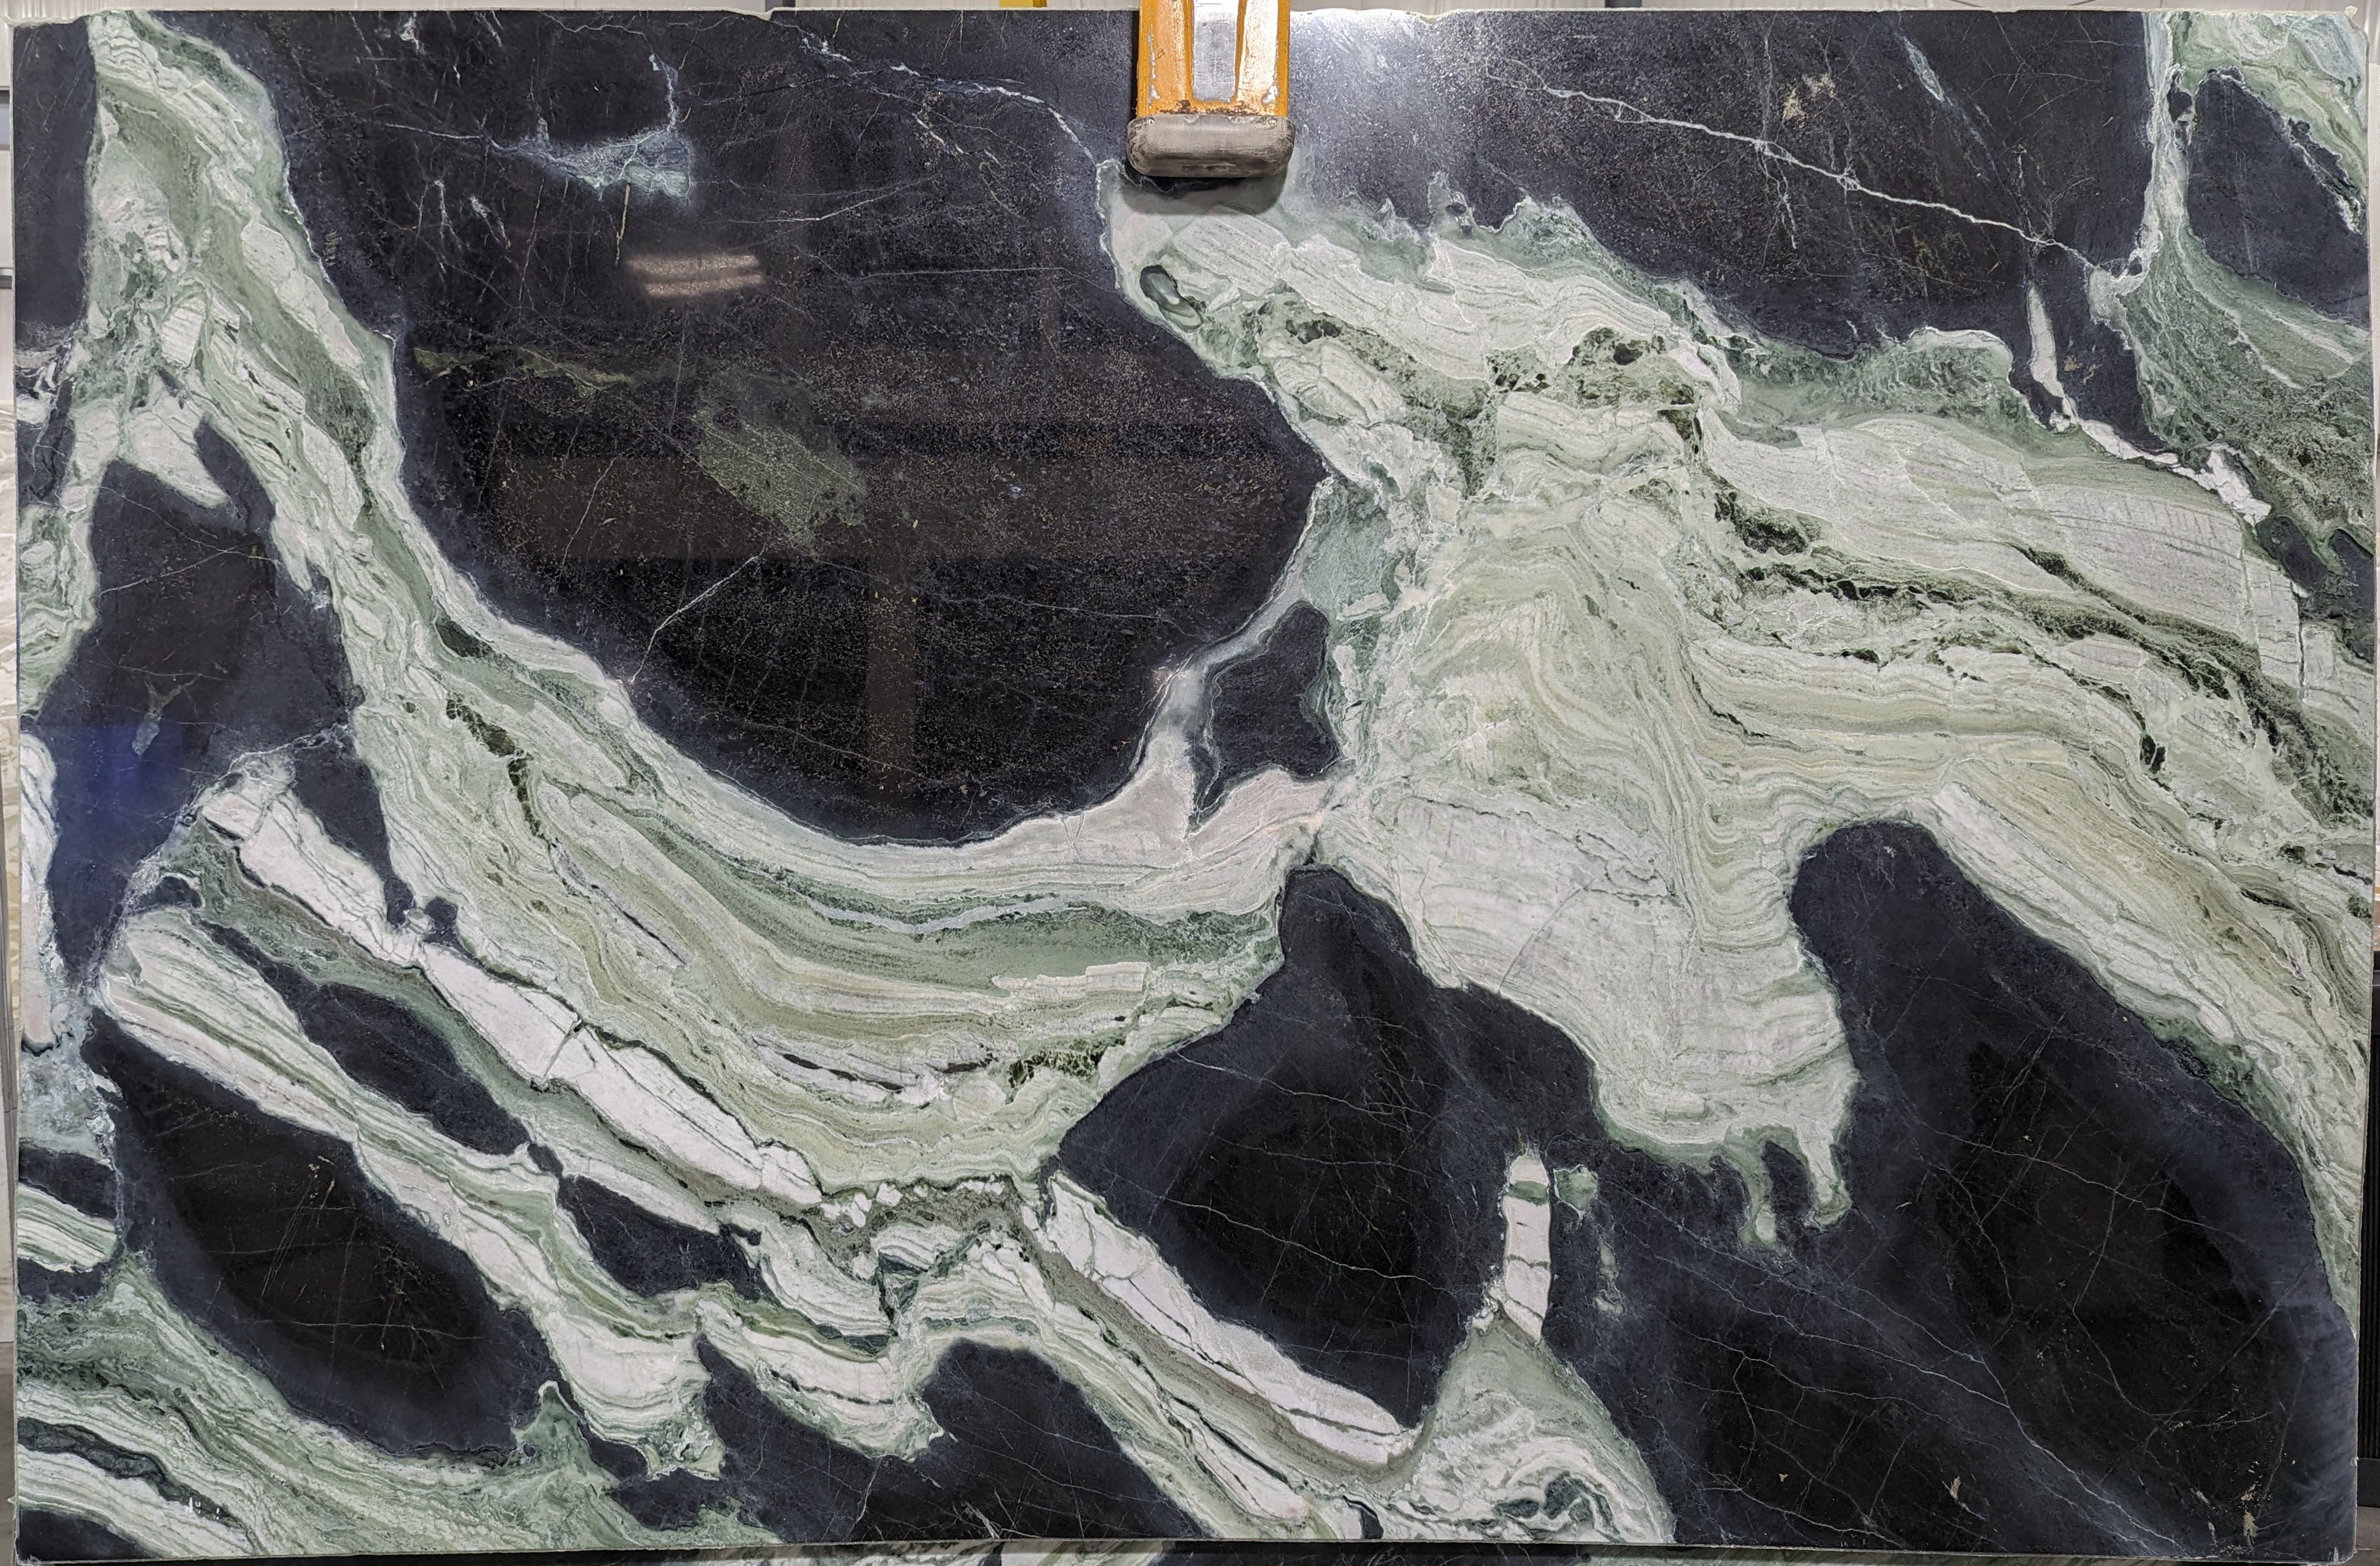  White Jade Marble Slab 3/4  Polished Stone - 38822#15 -  77x118 